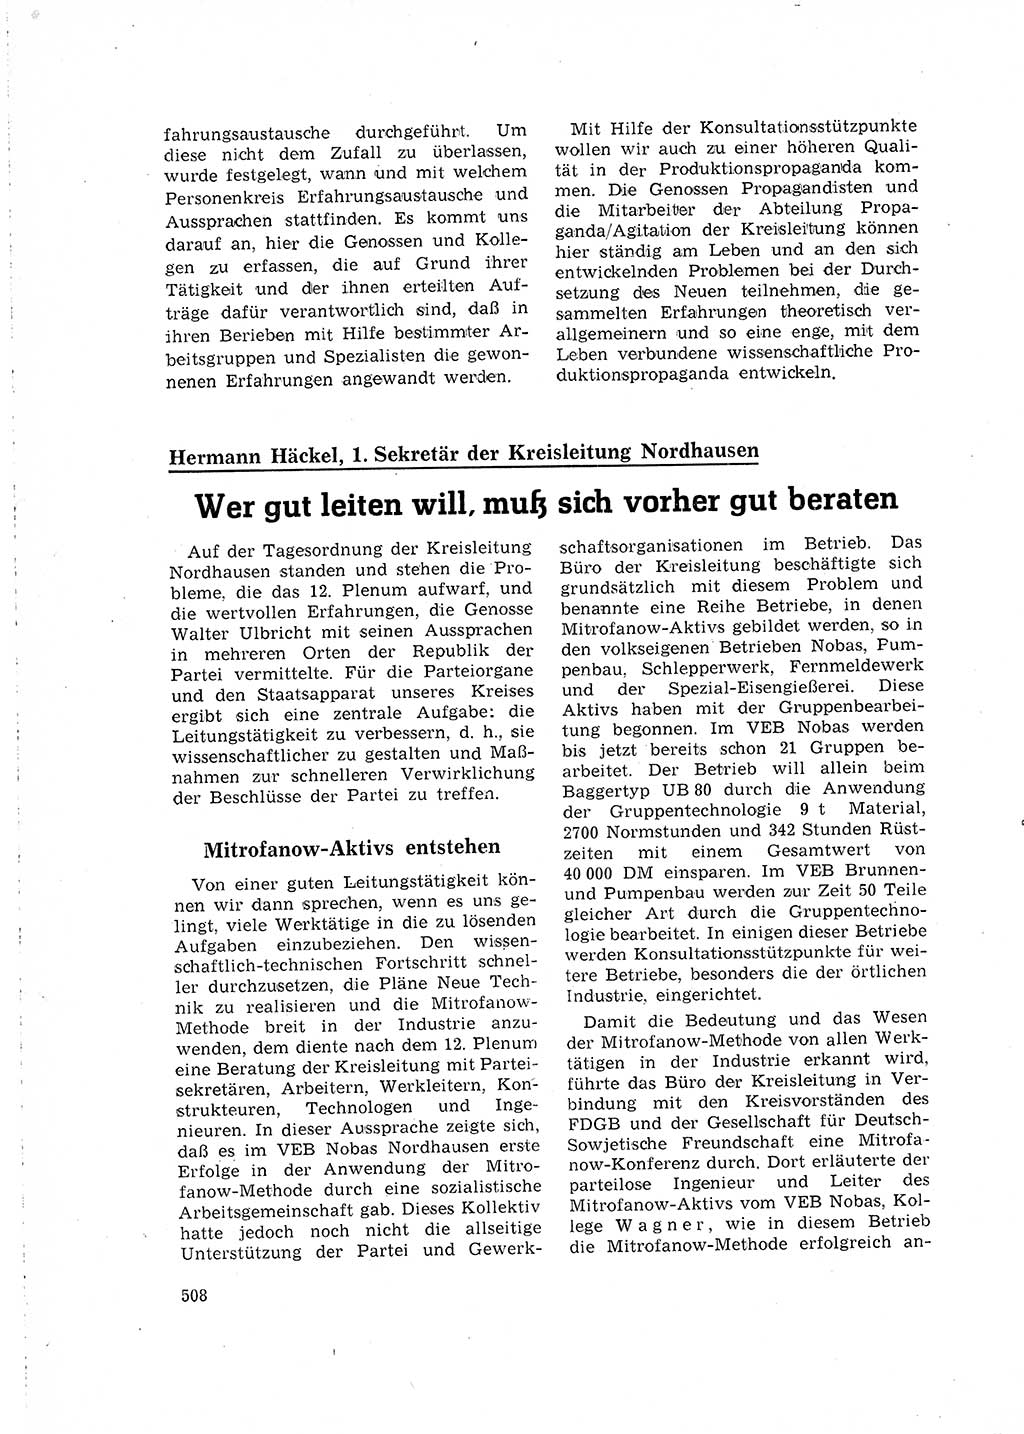 Neuer Weg (NW), Organ des Zentralkomitees (ZK) der SED (Sozialistische Einheitspartei Deutschlands) für Fragen des Parteilebens, 16. Jahrgang [Deutsche Demokratische Republik (DDR)] 1961, Seite 508 (NW ZK SED DDR 1961, S. 508)